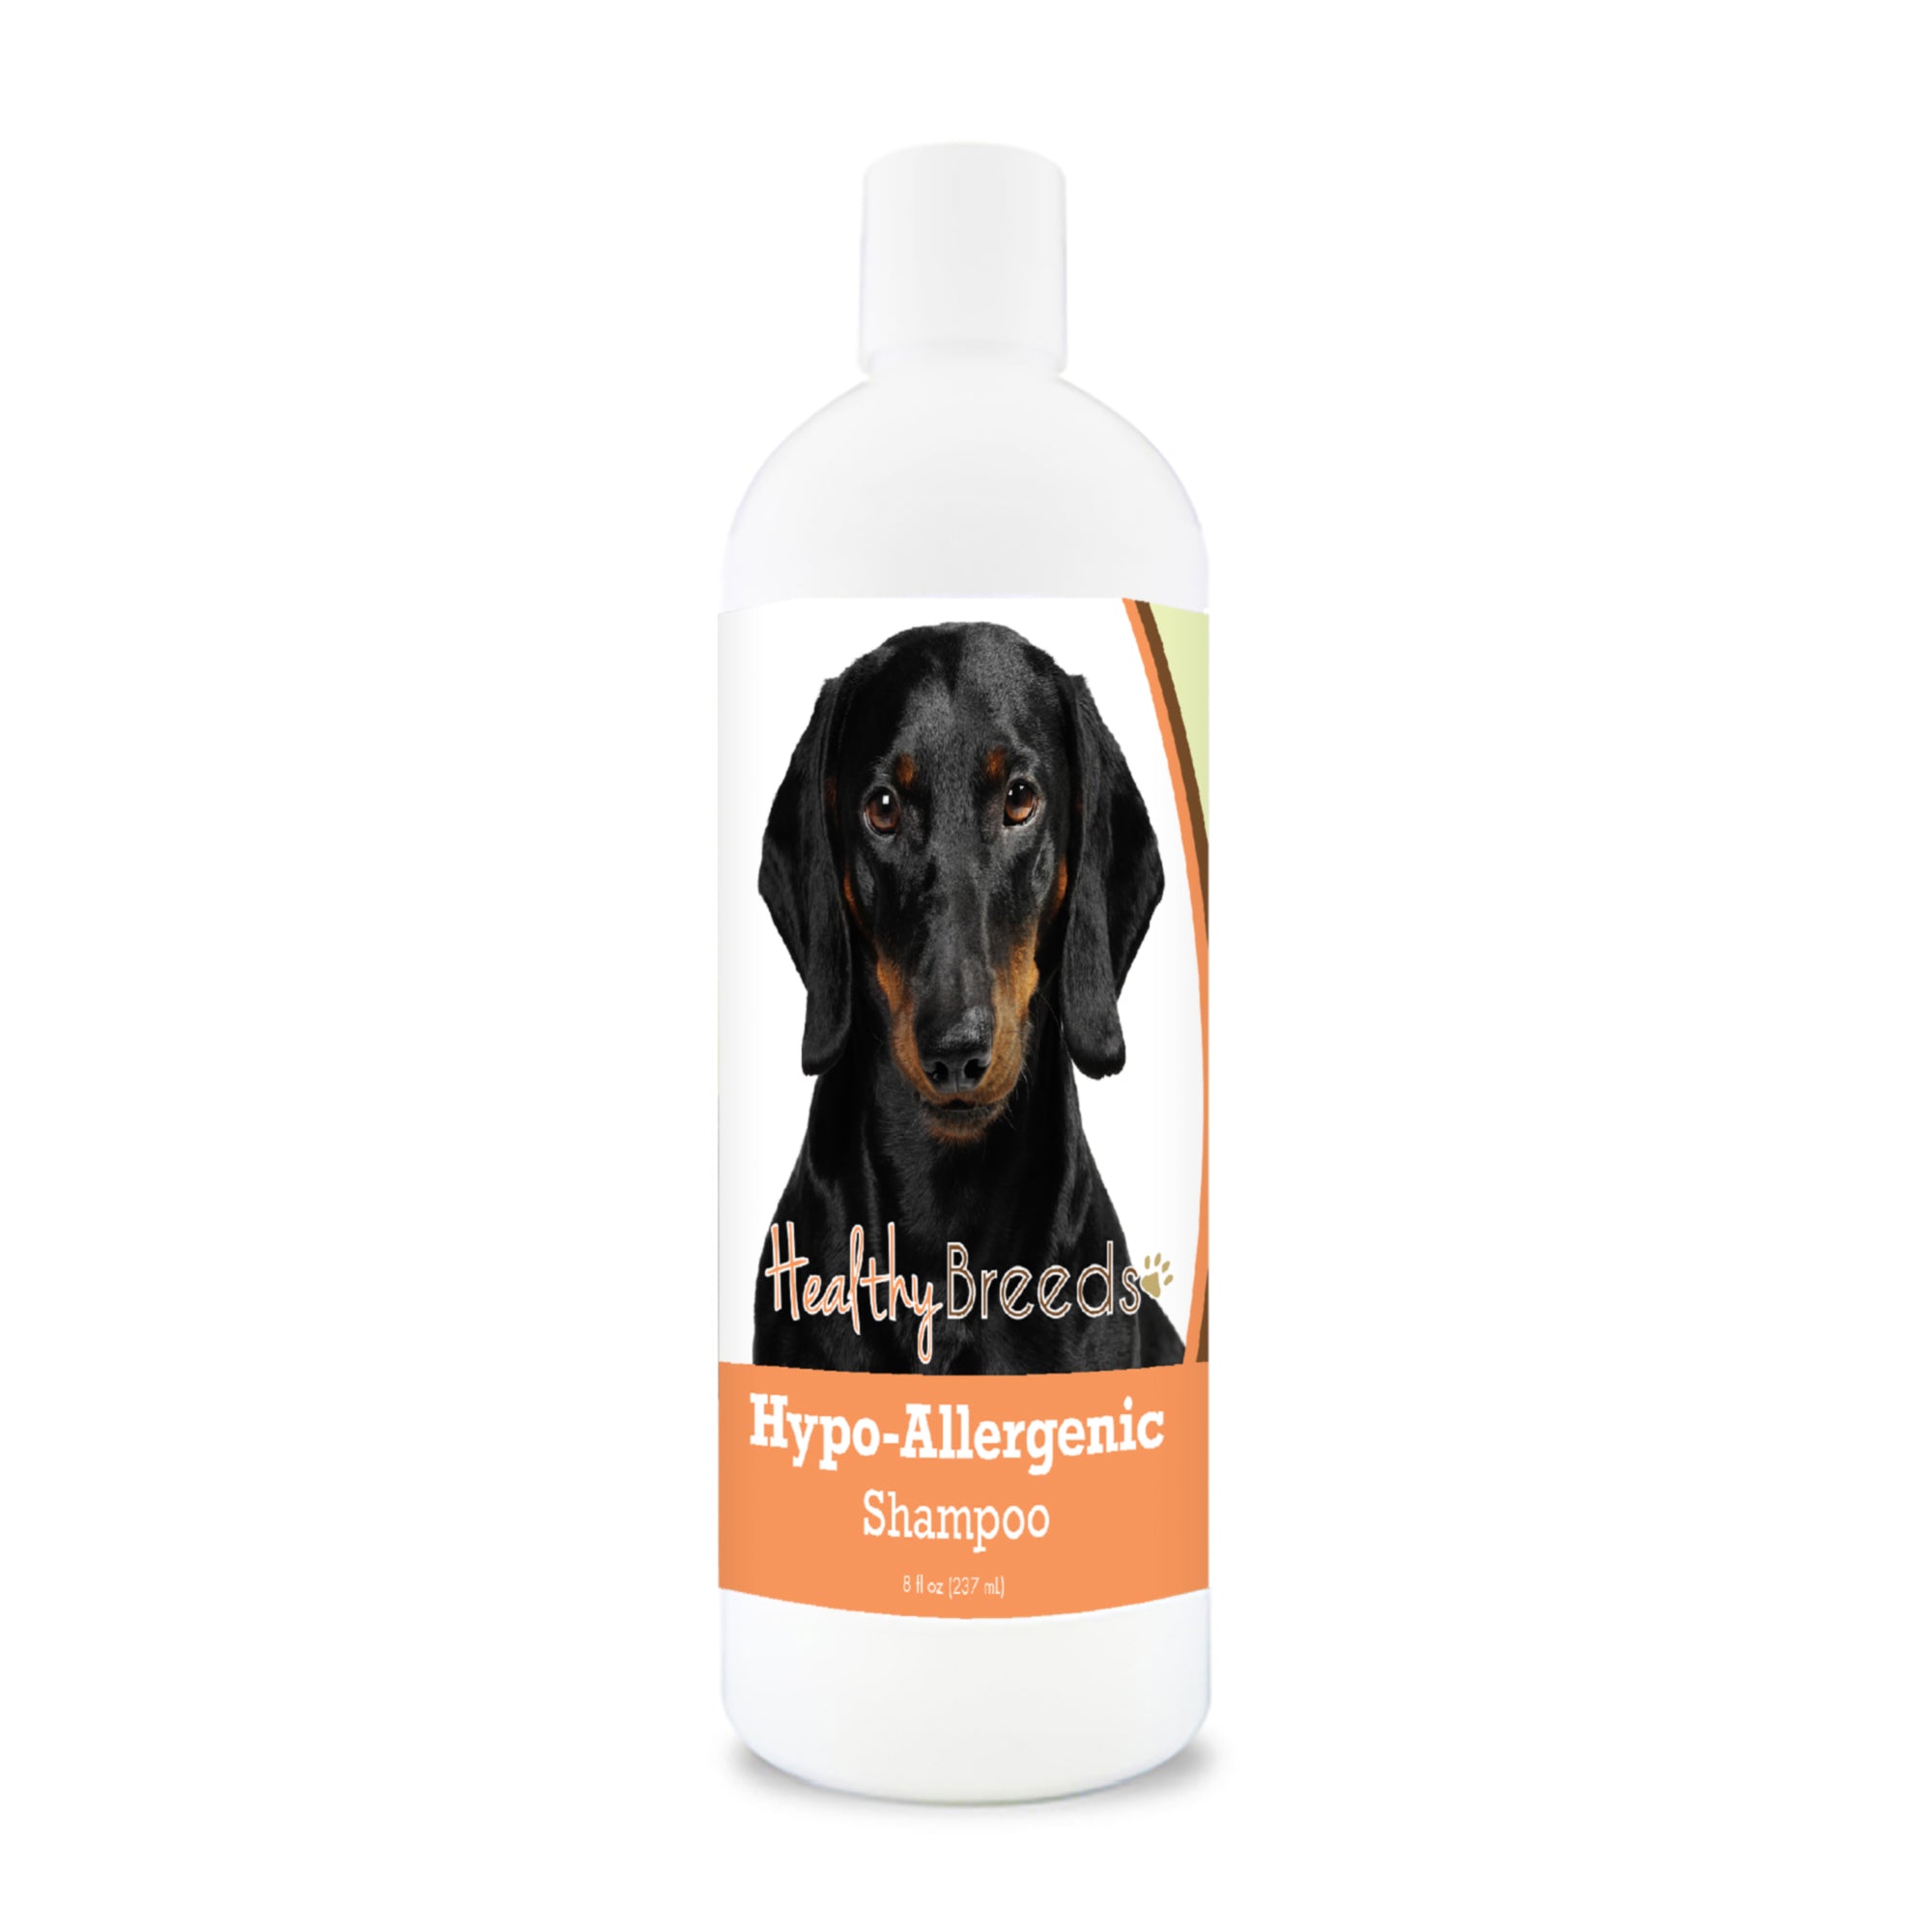 Dachshund Hypo-Allergenic Shampoo 8 oz